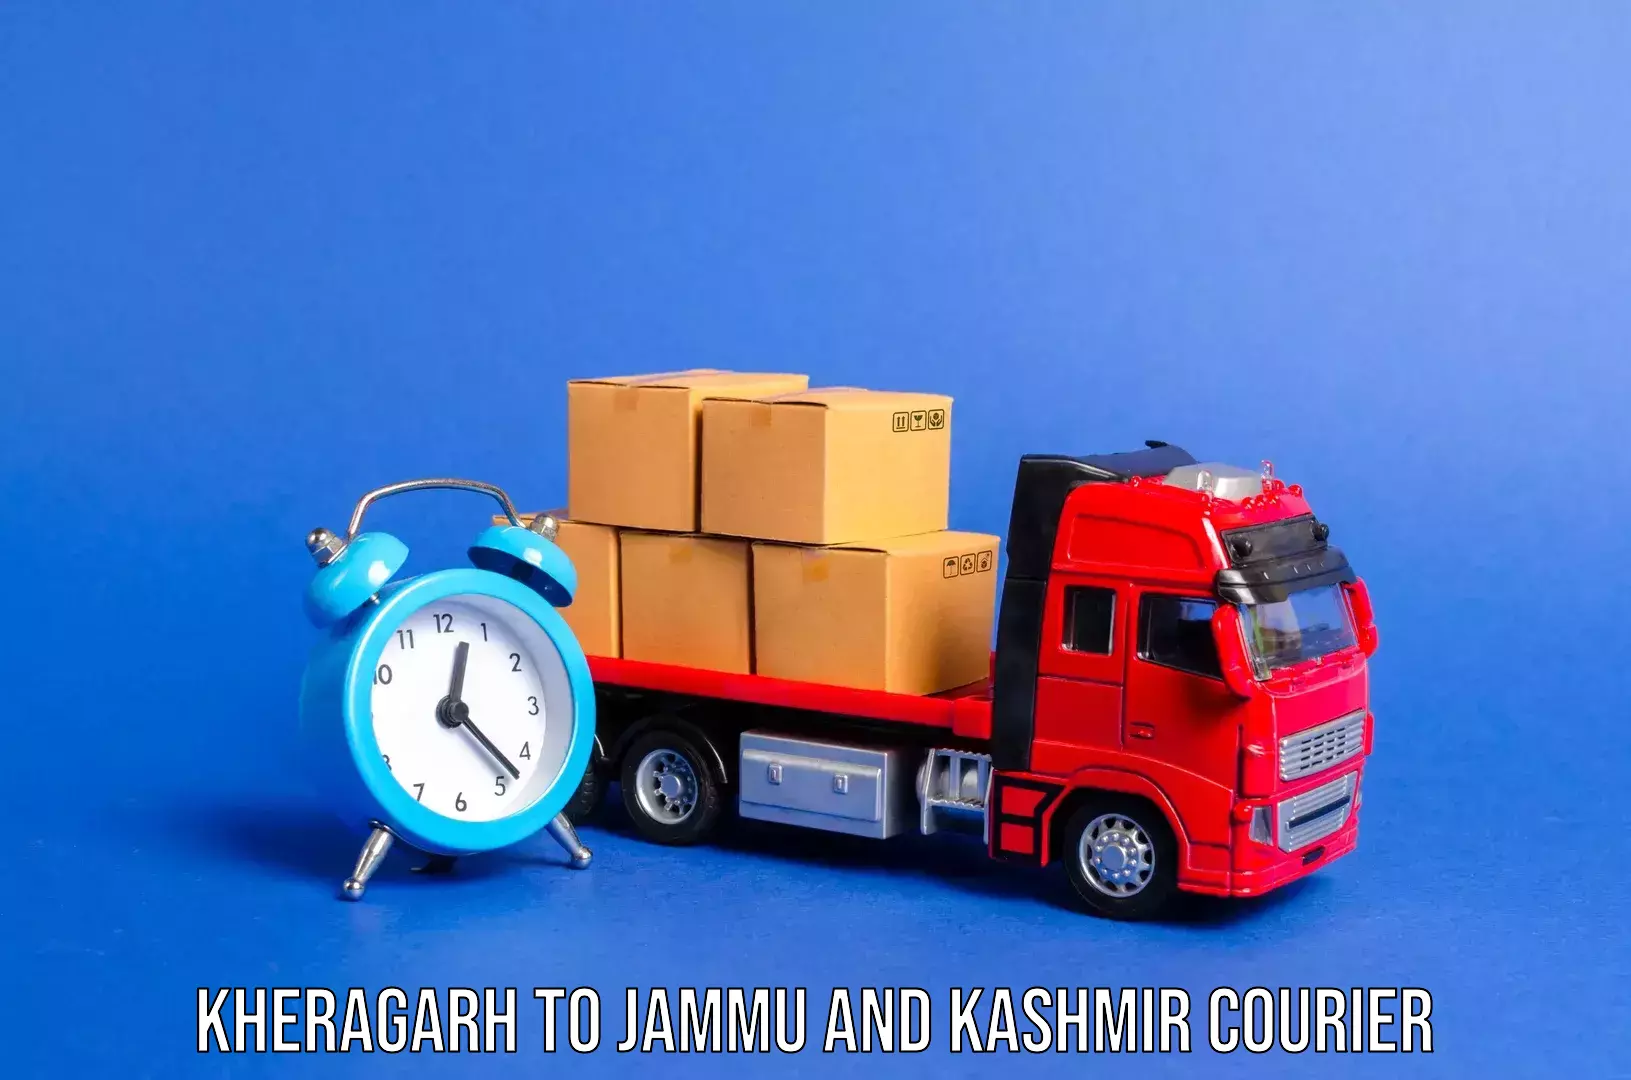 Global baggage shipping Kheragarh to Bandipur